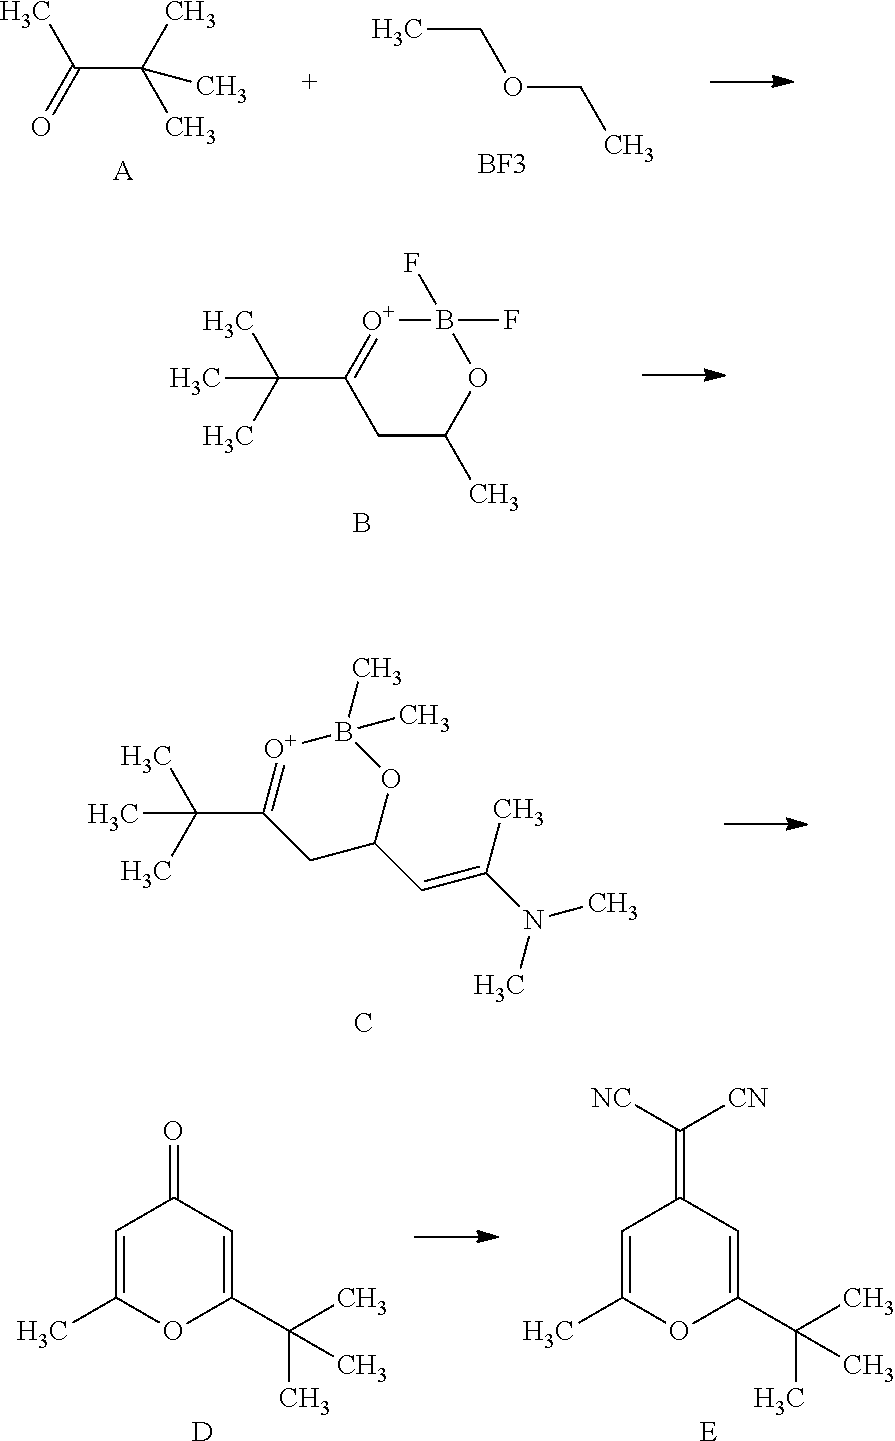 Synthetic Method of 5,5-Dimethyl-2,4-Adipaldehyde-0,0-Boron Difluoride